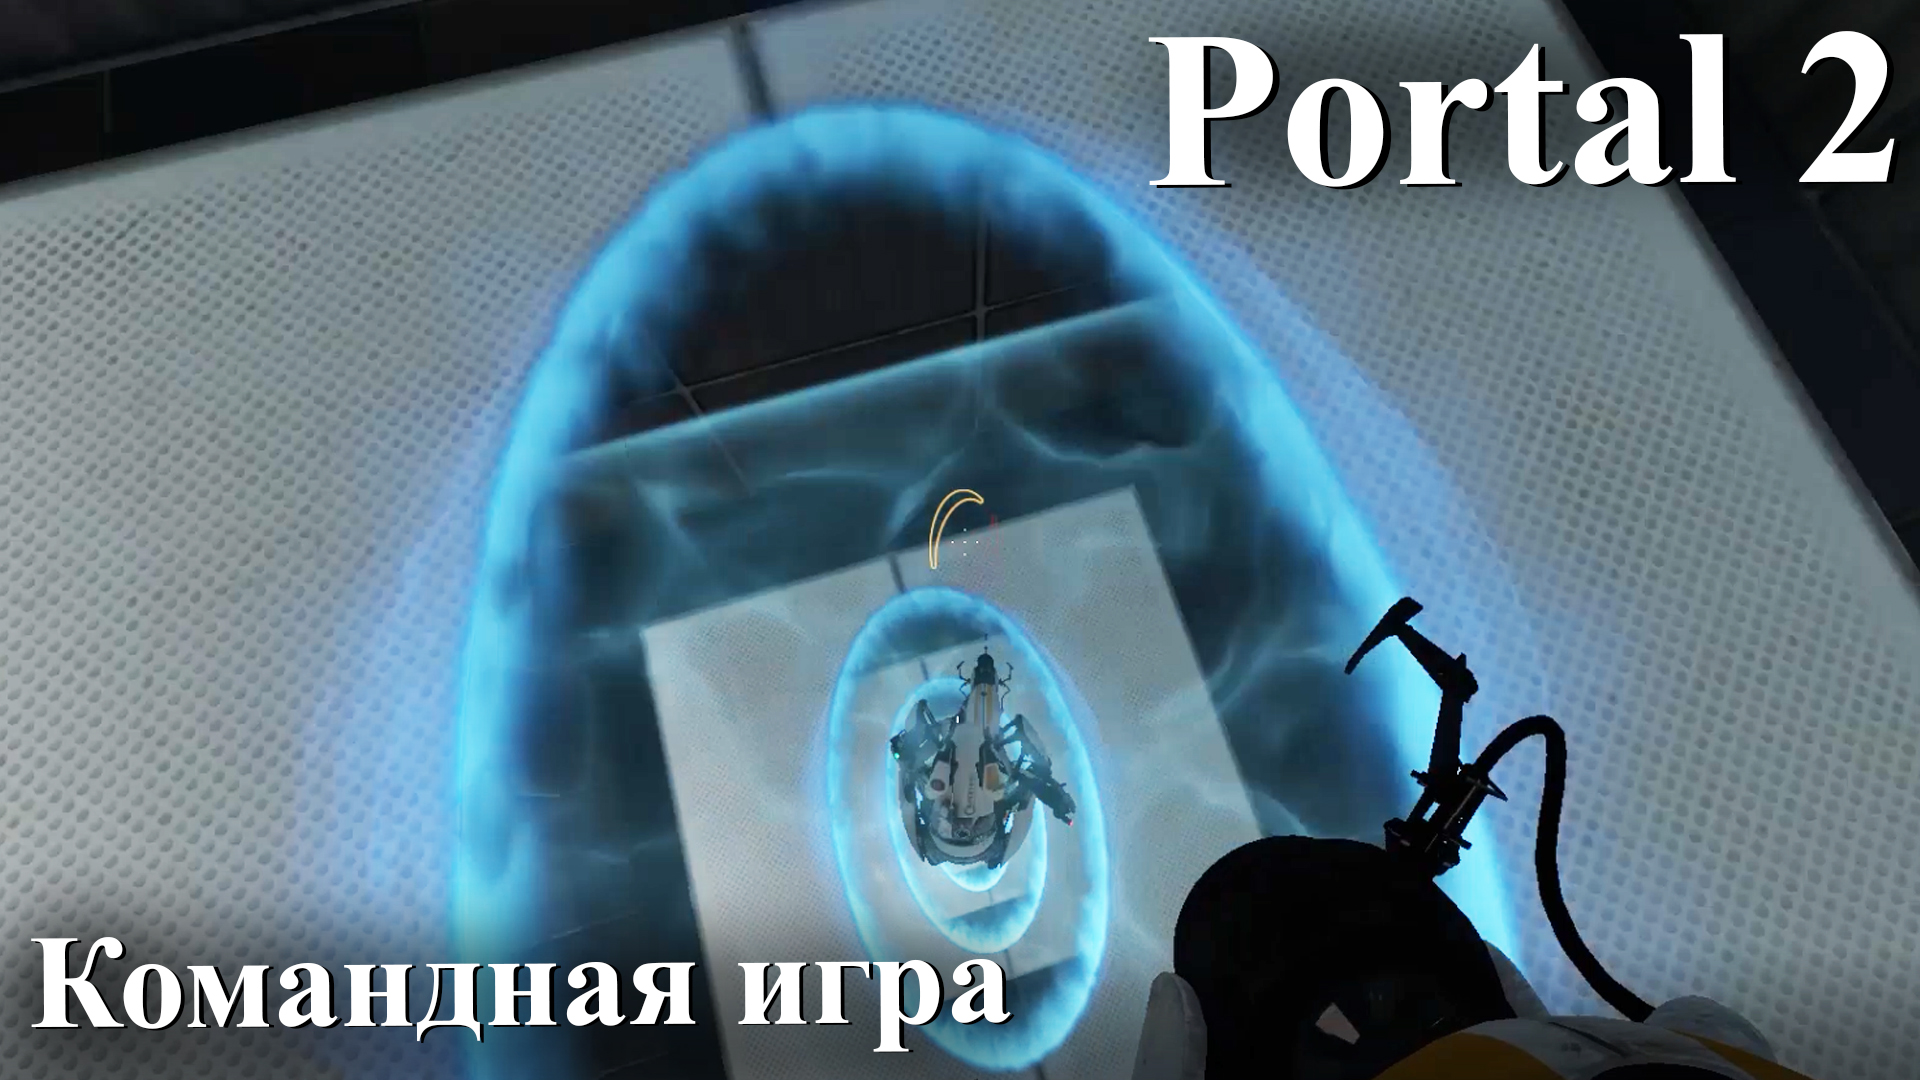 Portal 2 получения достижений фото 98